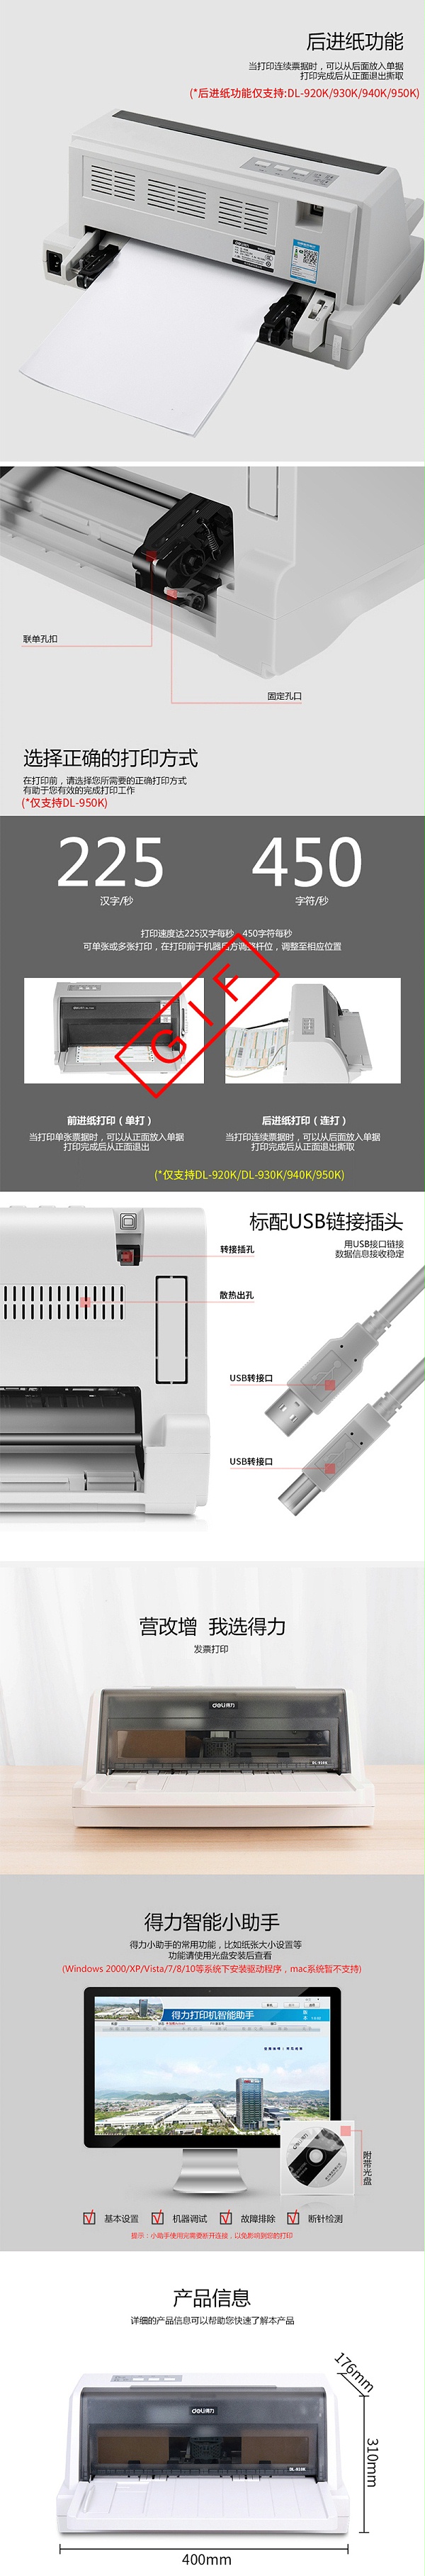 得力DL-940K 针式打印机